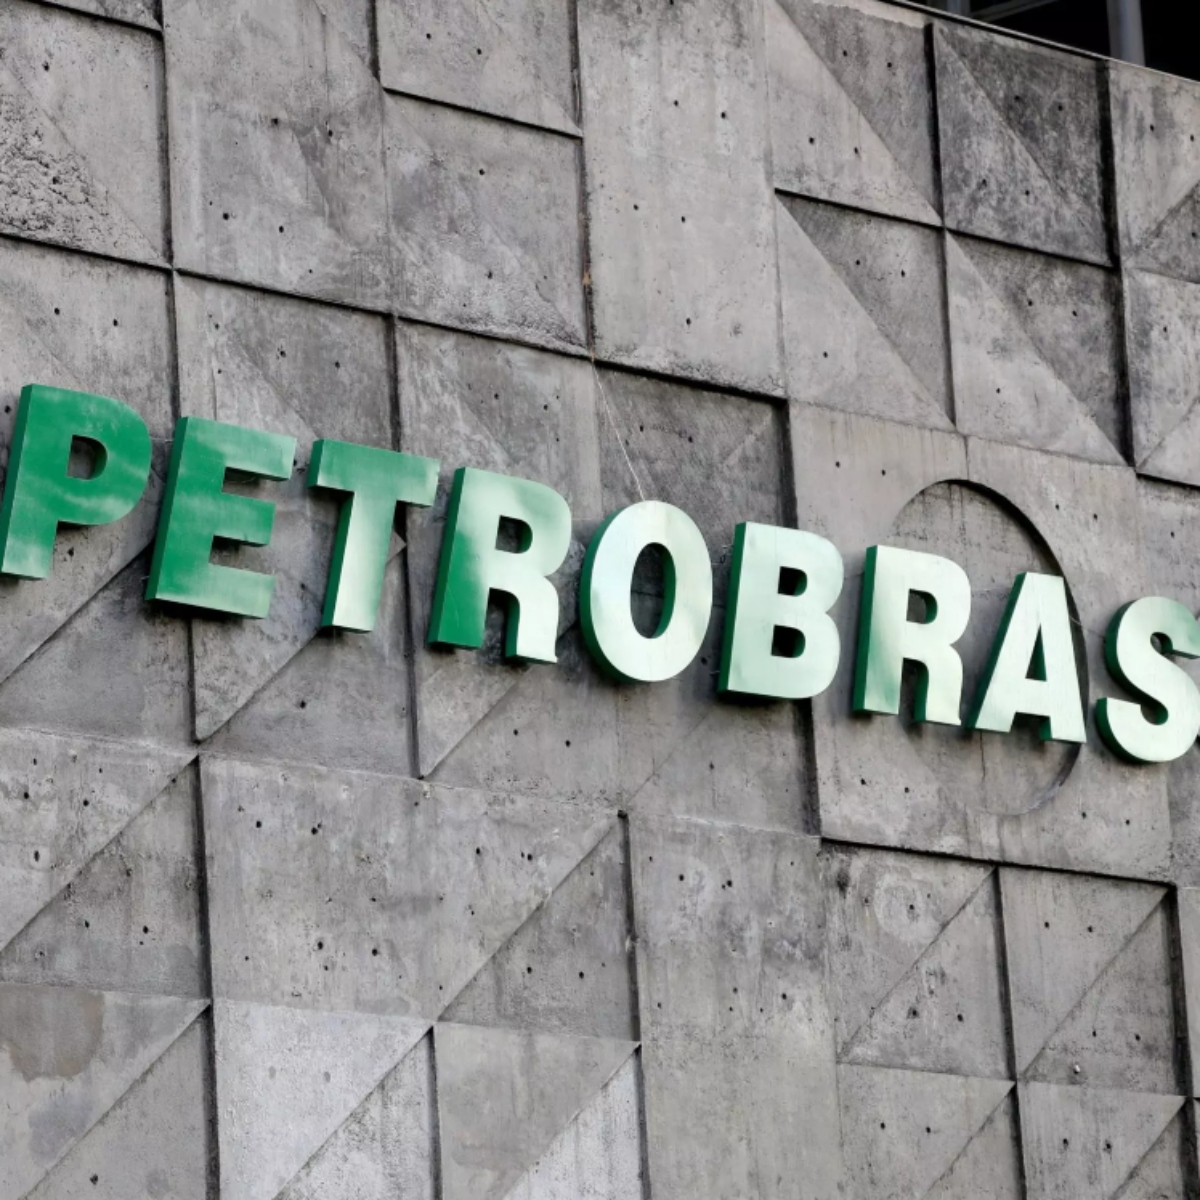  Petrobras estágio vagas 